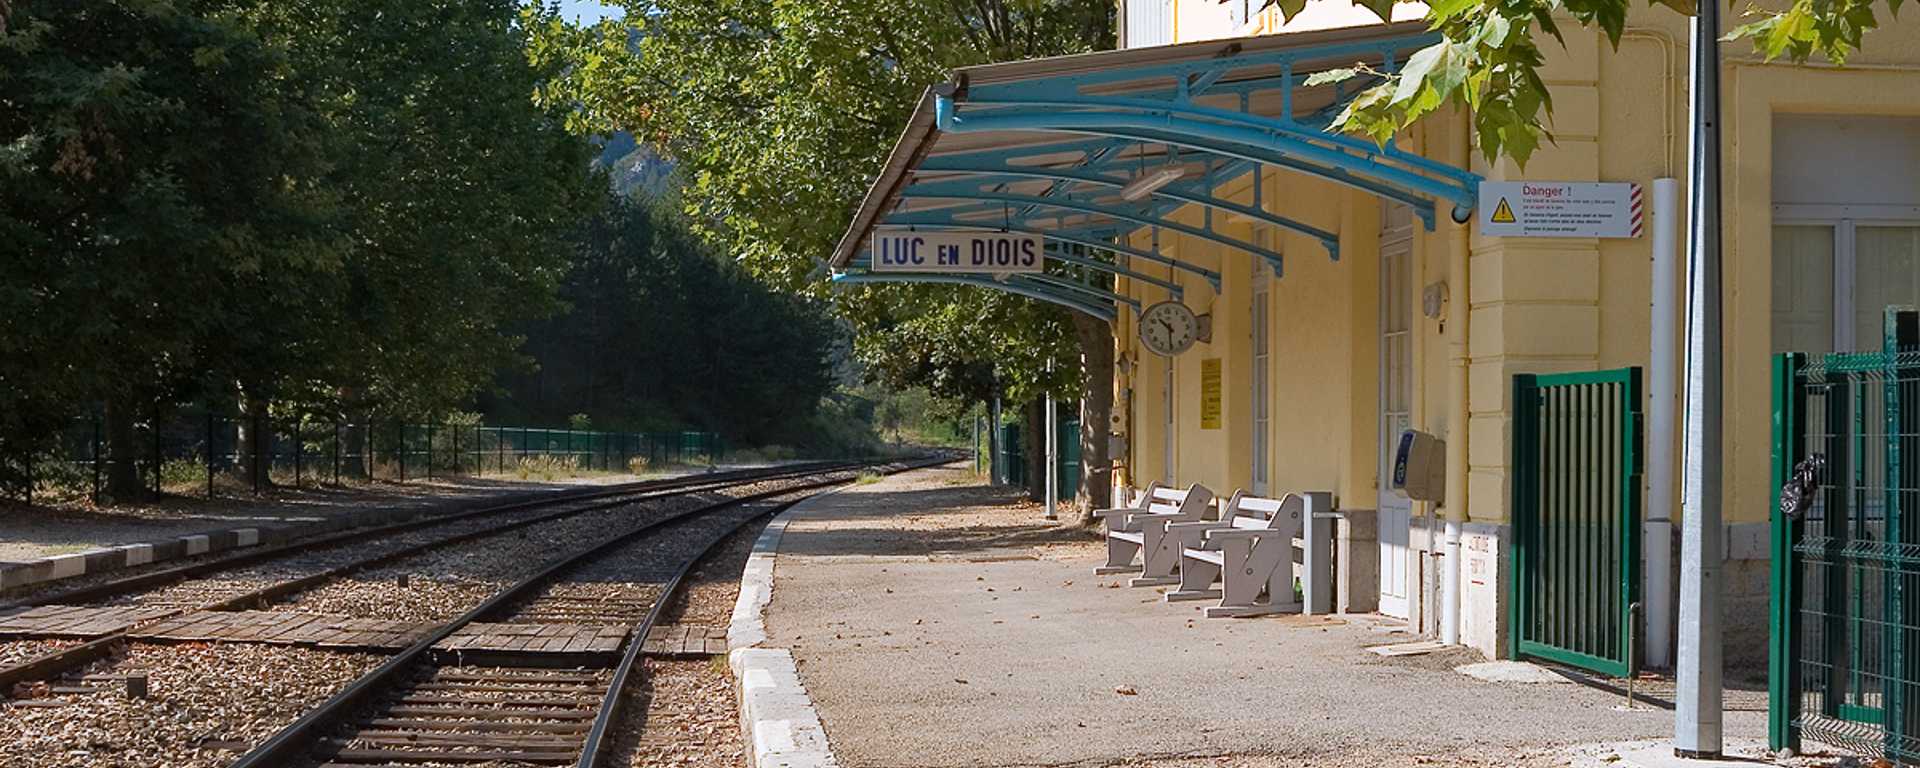 Gare de Luc-en-Diois dans la Drôme